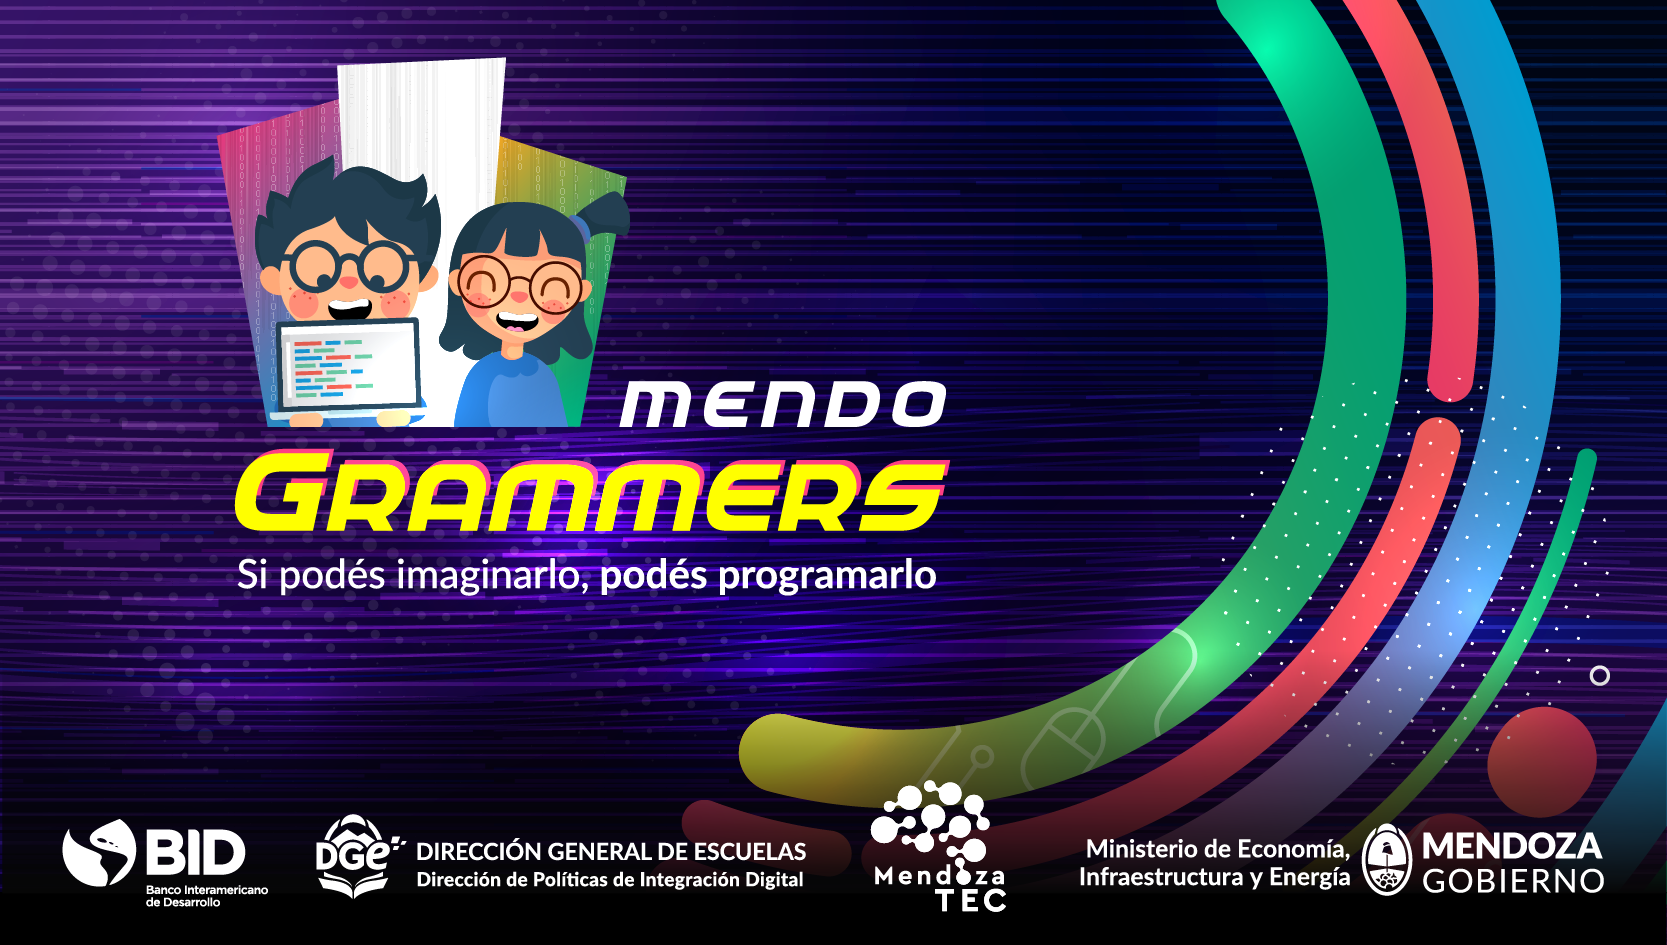 El lunes 5 de agosto inicia la Formación de Mentores para la Plataforma Mendogrammers, con puntaje docente